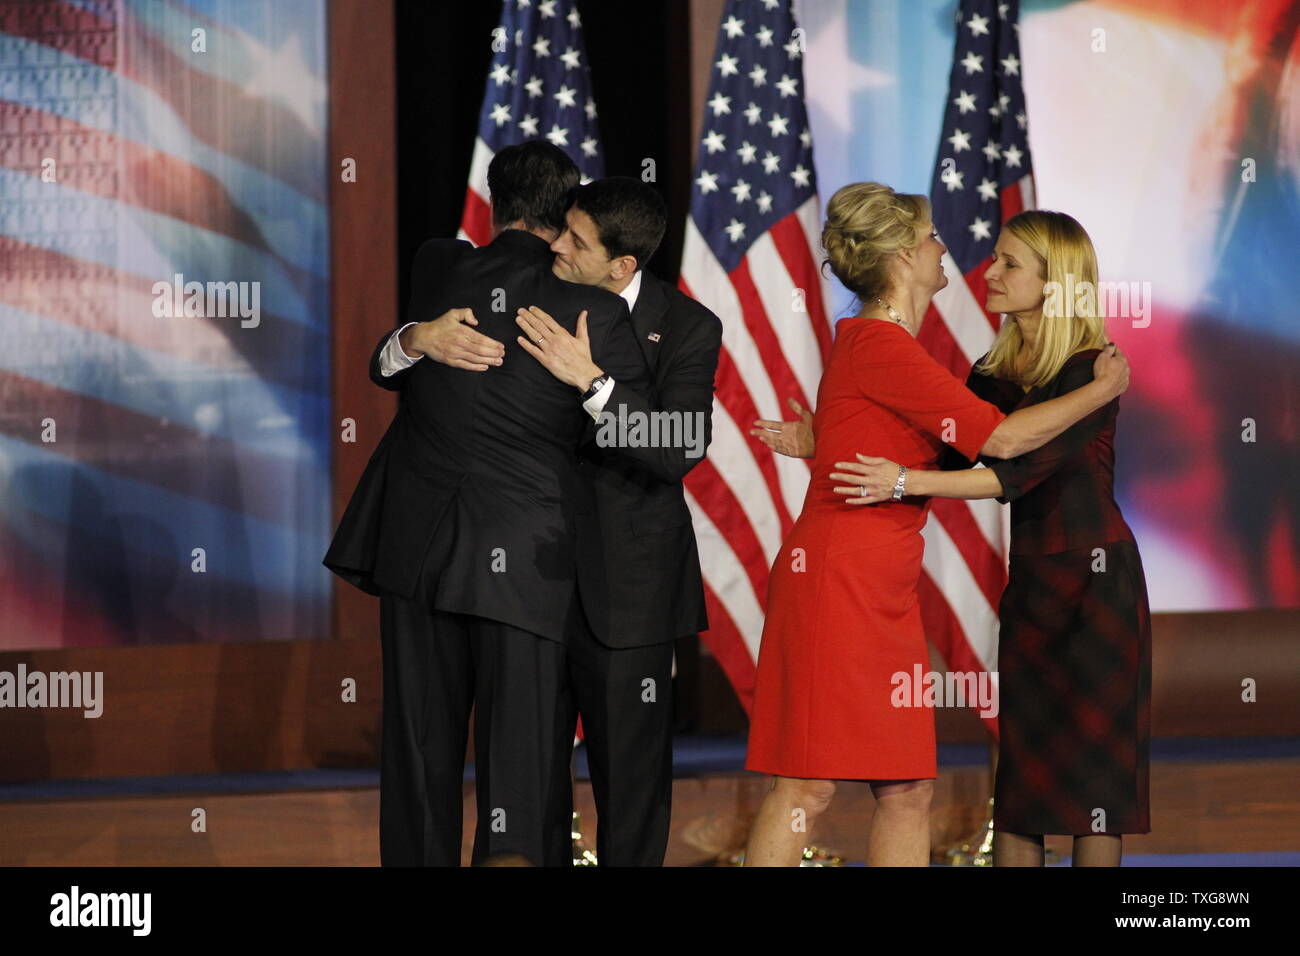 Der republikanische Präsidentschaftskandidat Mitt Romney umfasst running mate Paul Ryan als Ehefrauen Hug nach seinem Zugeständnis Rede bei seiner Wahl Nacht Veranstaltung in Boston am 6. November 2012. Präsident Obama gewonnen Wiederwahl über Republikaner Mitt Romney. UPI/Matthew Healy Stockfoto